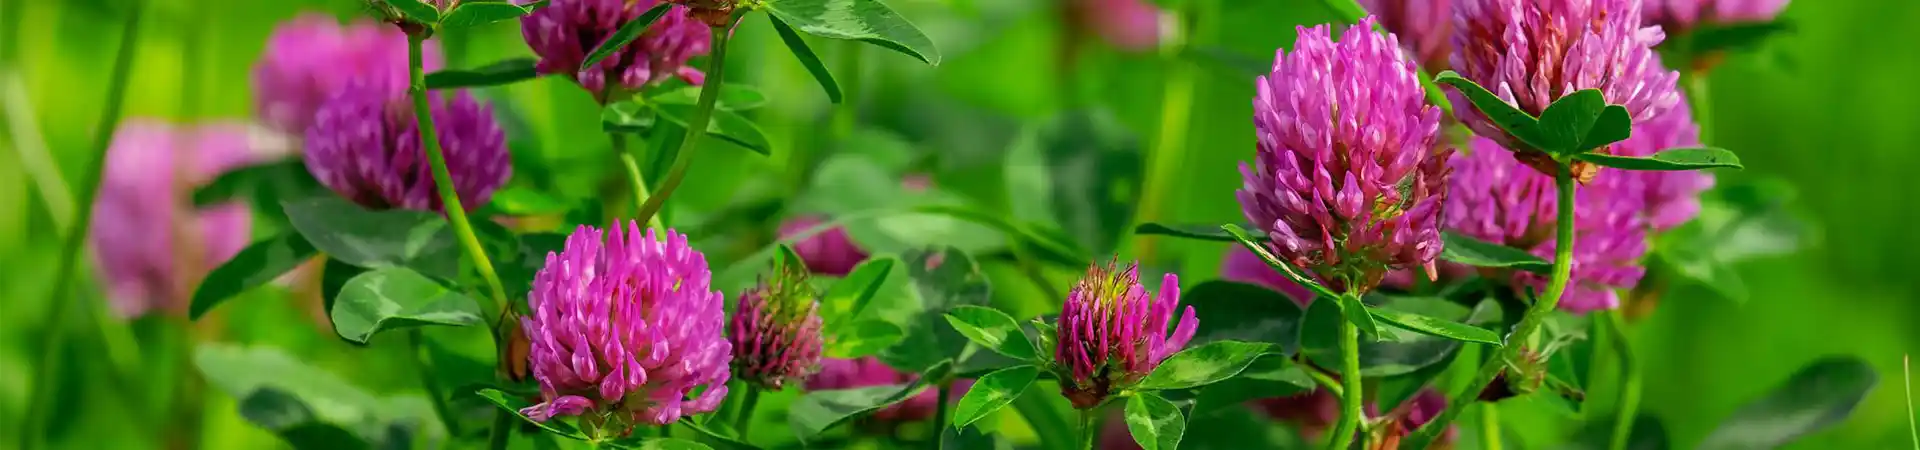 Rödklöver i närbild med härlig konstrast mellan lila och grön bakgrund